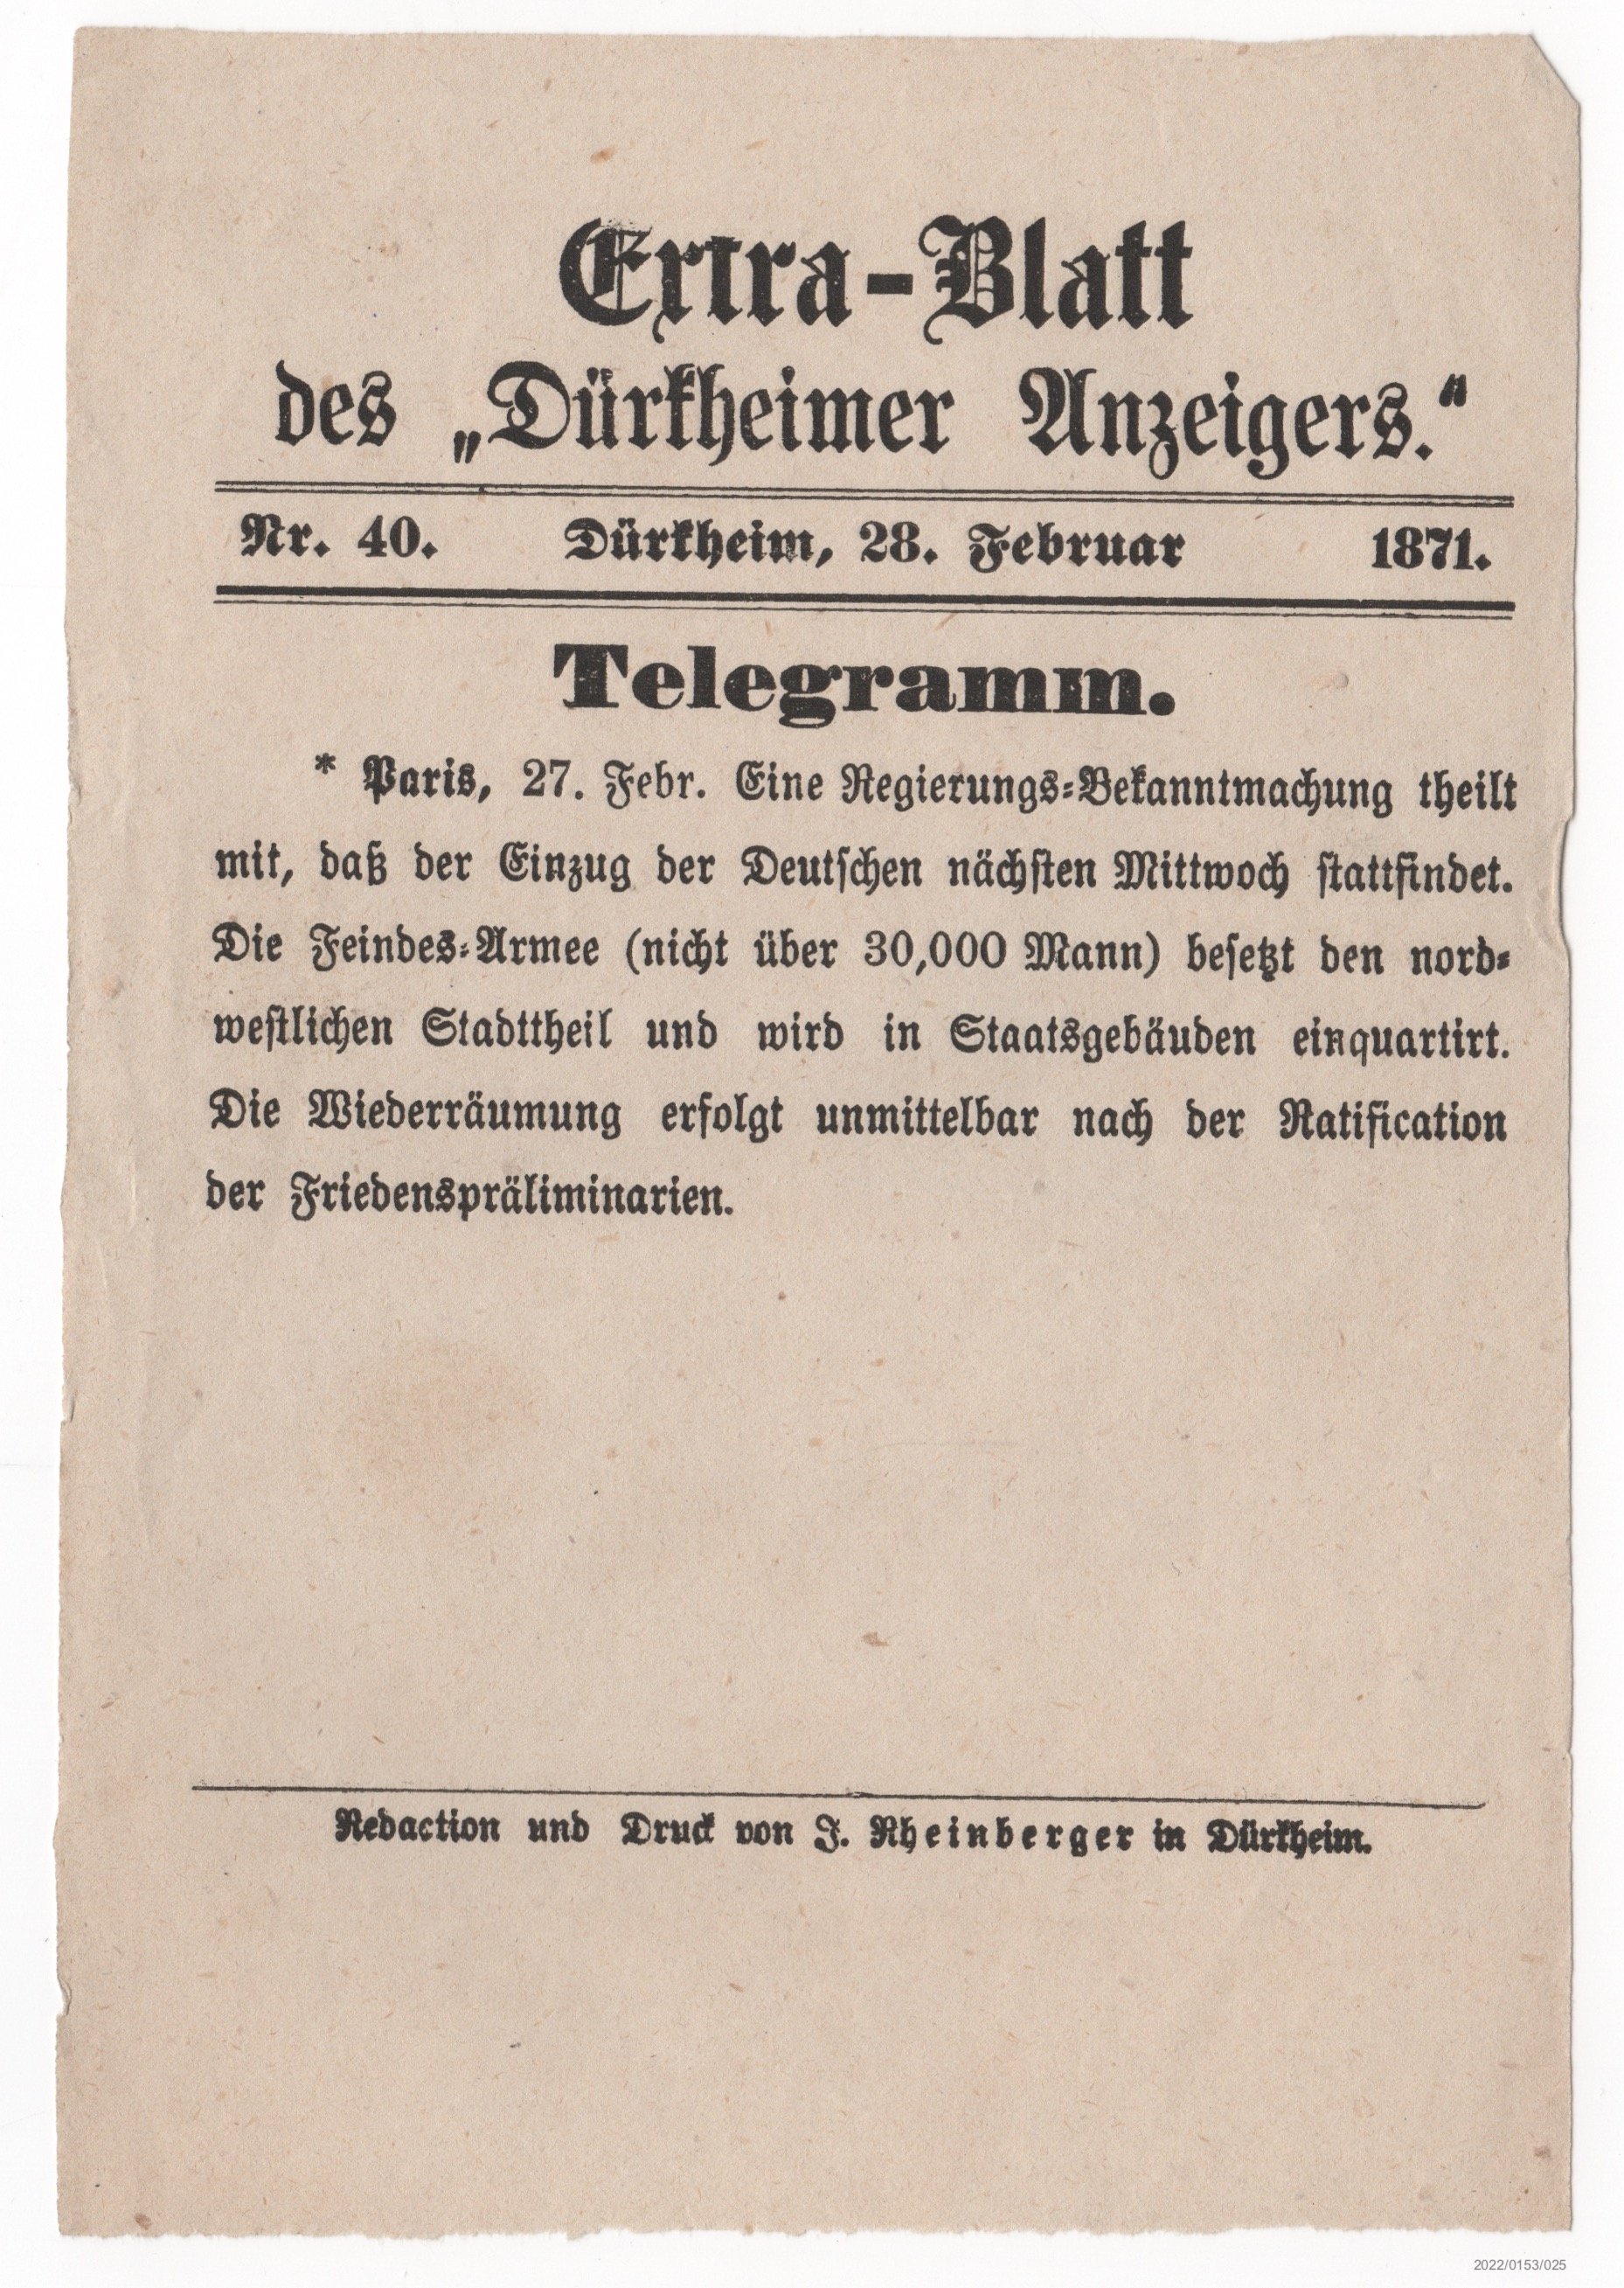 Extra-Blatt des Dürkheimer Anzeigers Nr. 40 28.02.1871 (Museumsgesellschaft Bad Dürkheim e. V. CC BY-NC-SA)